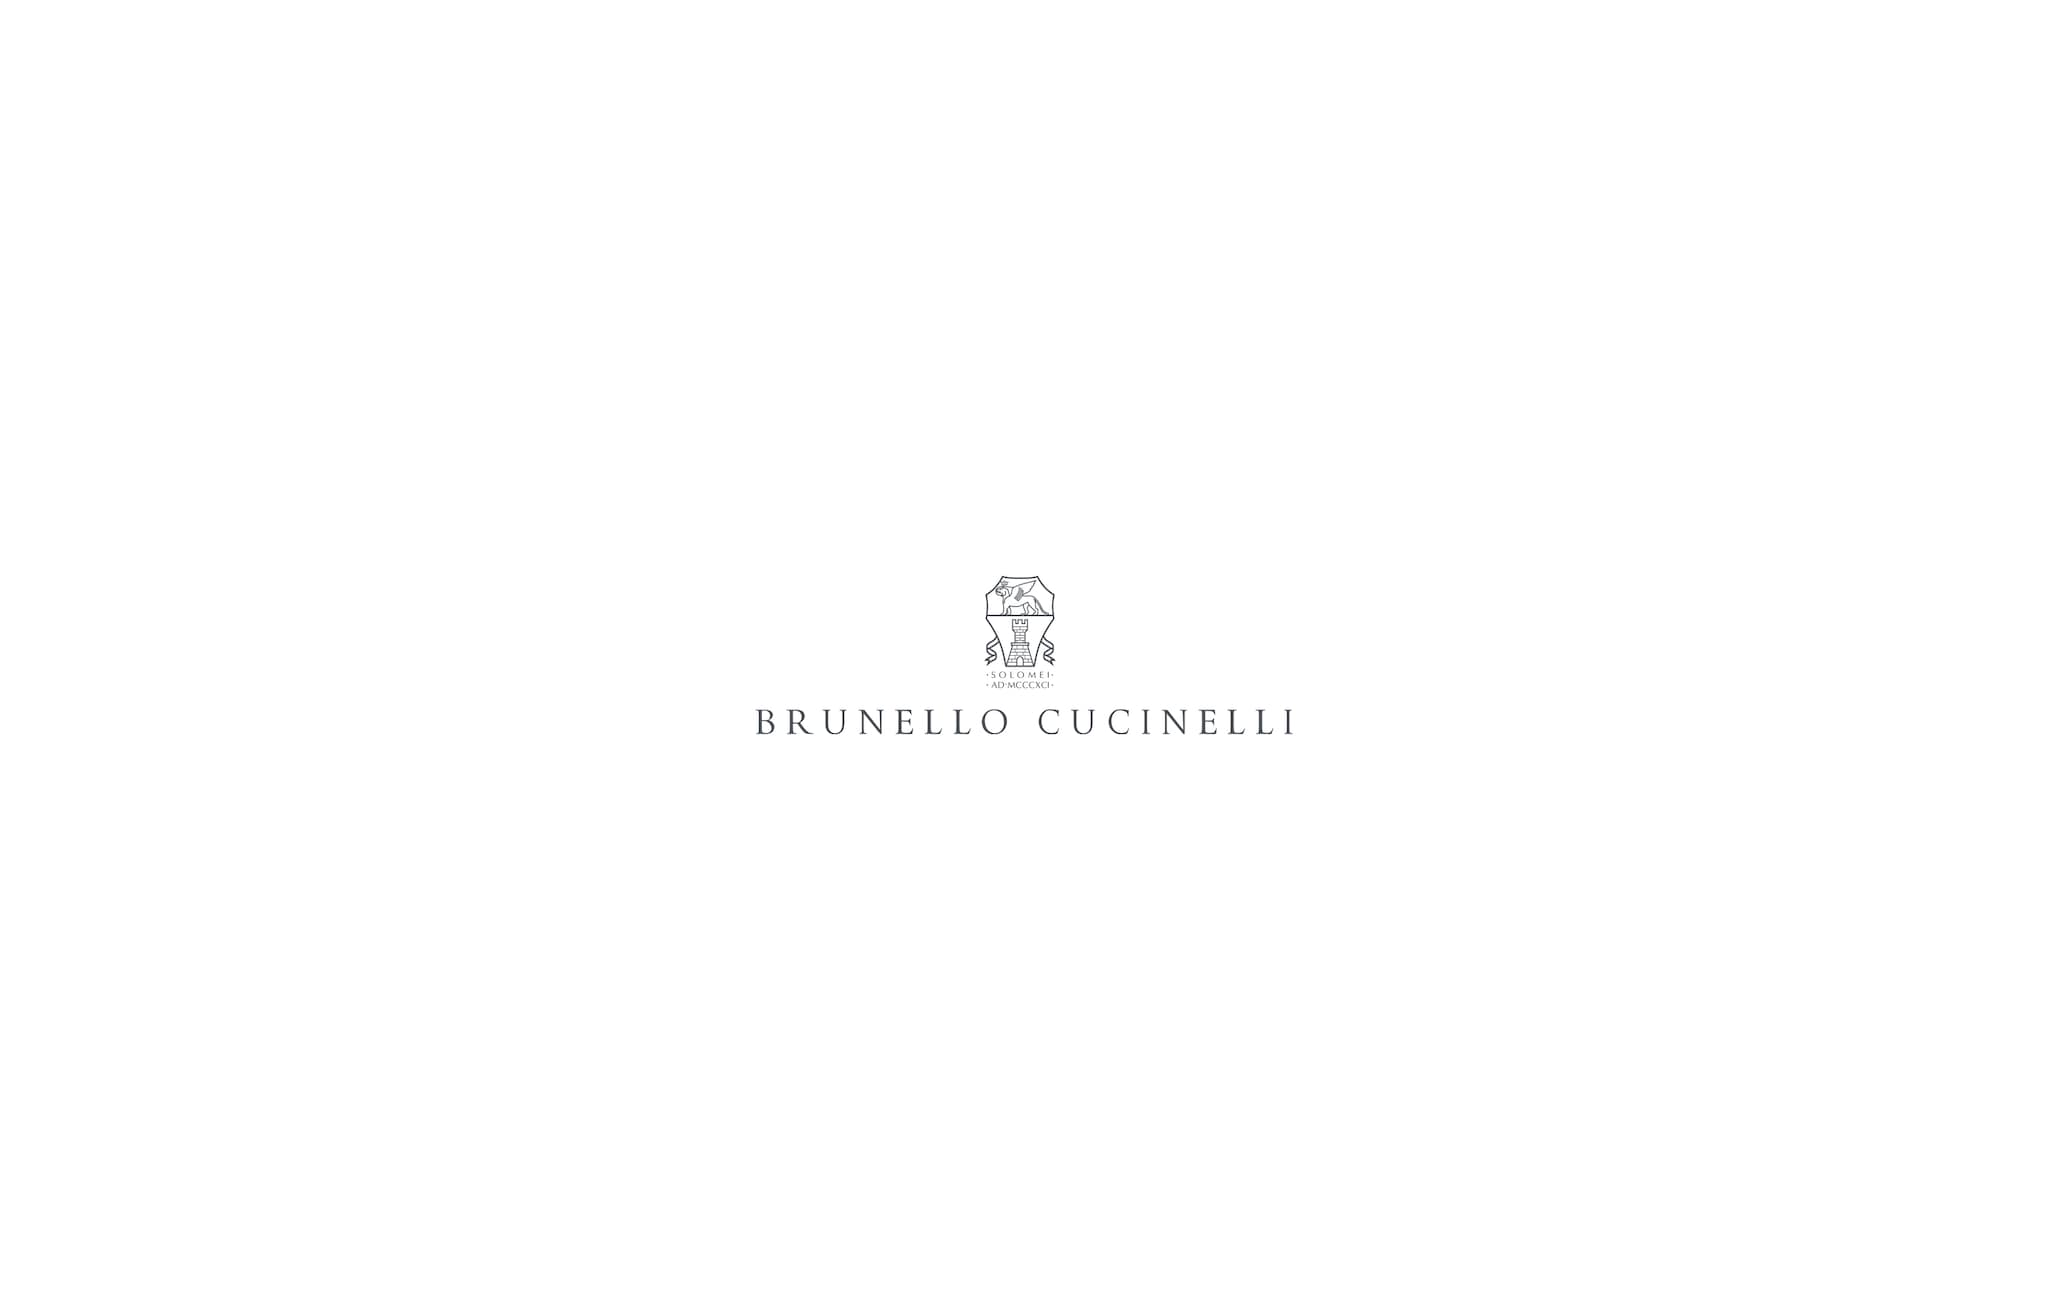  镶珠装饰的夹克 白色 女款 - Brunello Cucinelli 